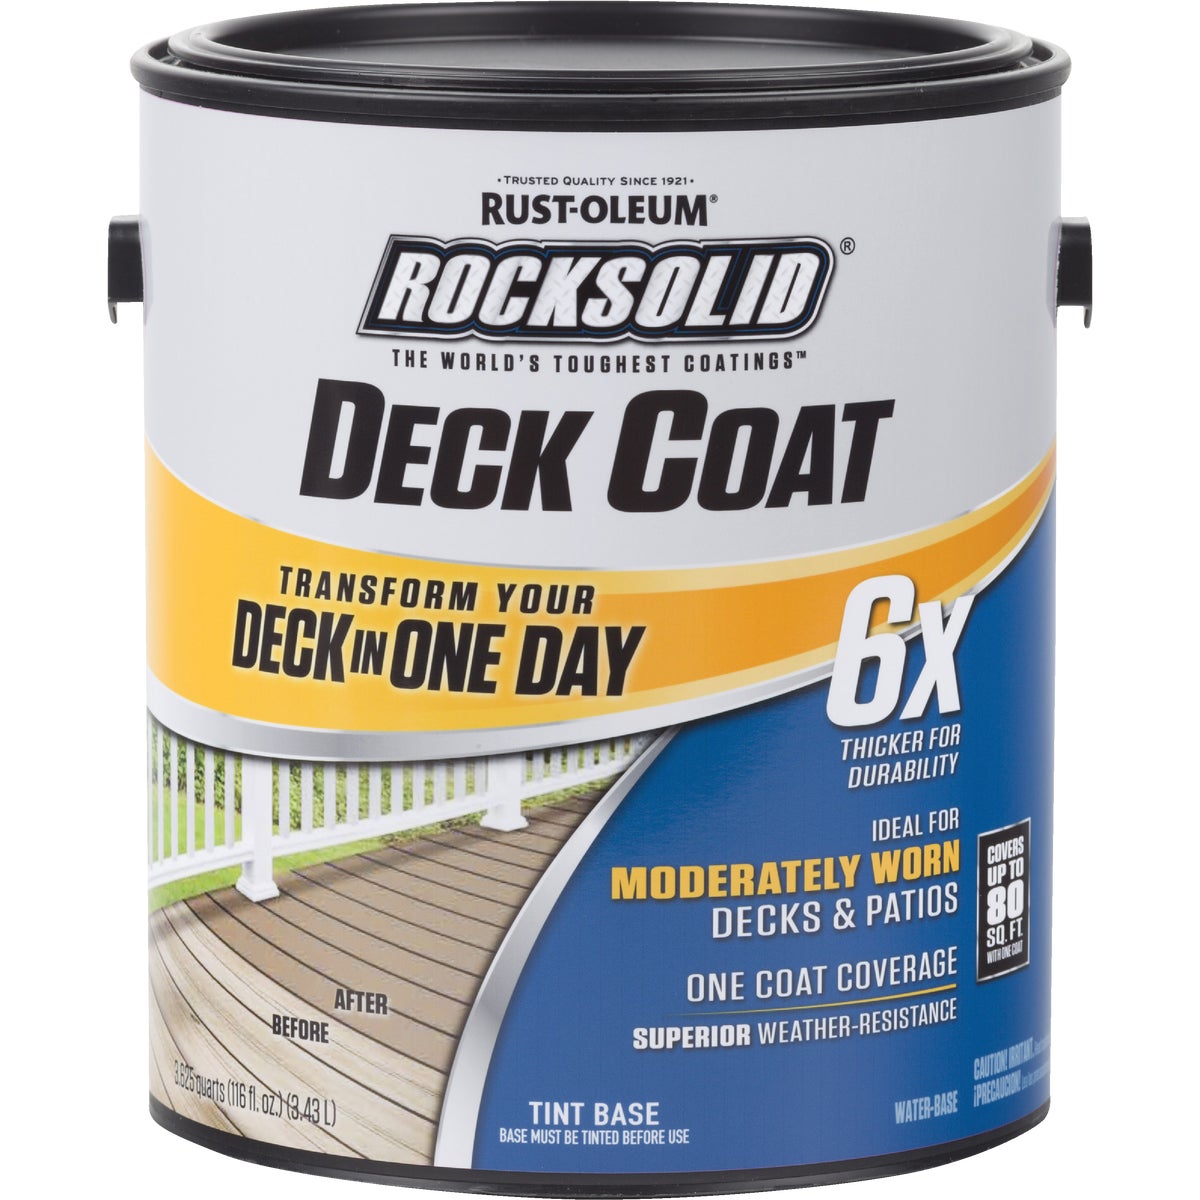 Deck & Dock Coating